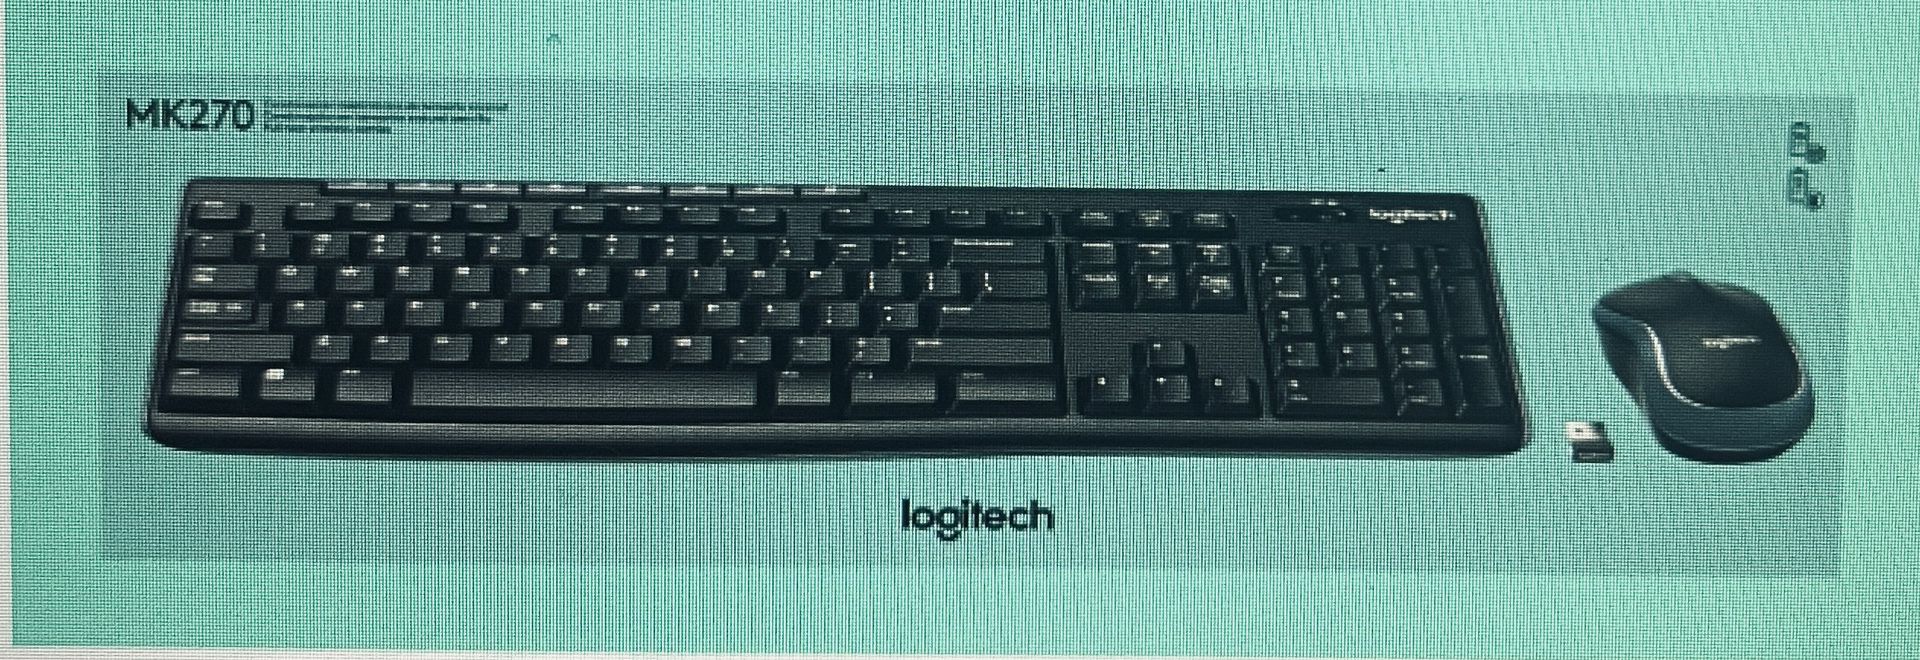 Brand New Logitech, Wireless Keyboard & Wireless Mouse, Combo